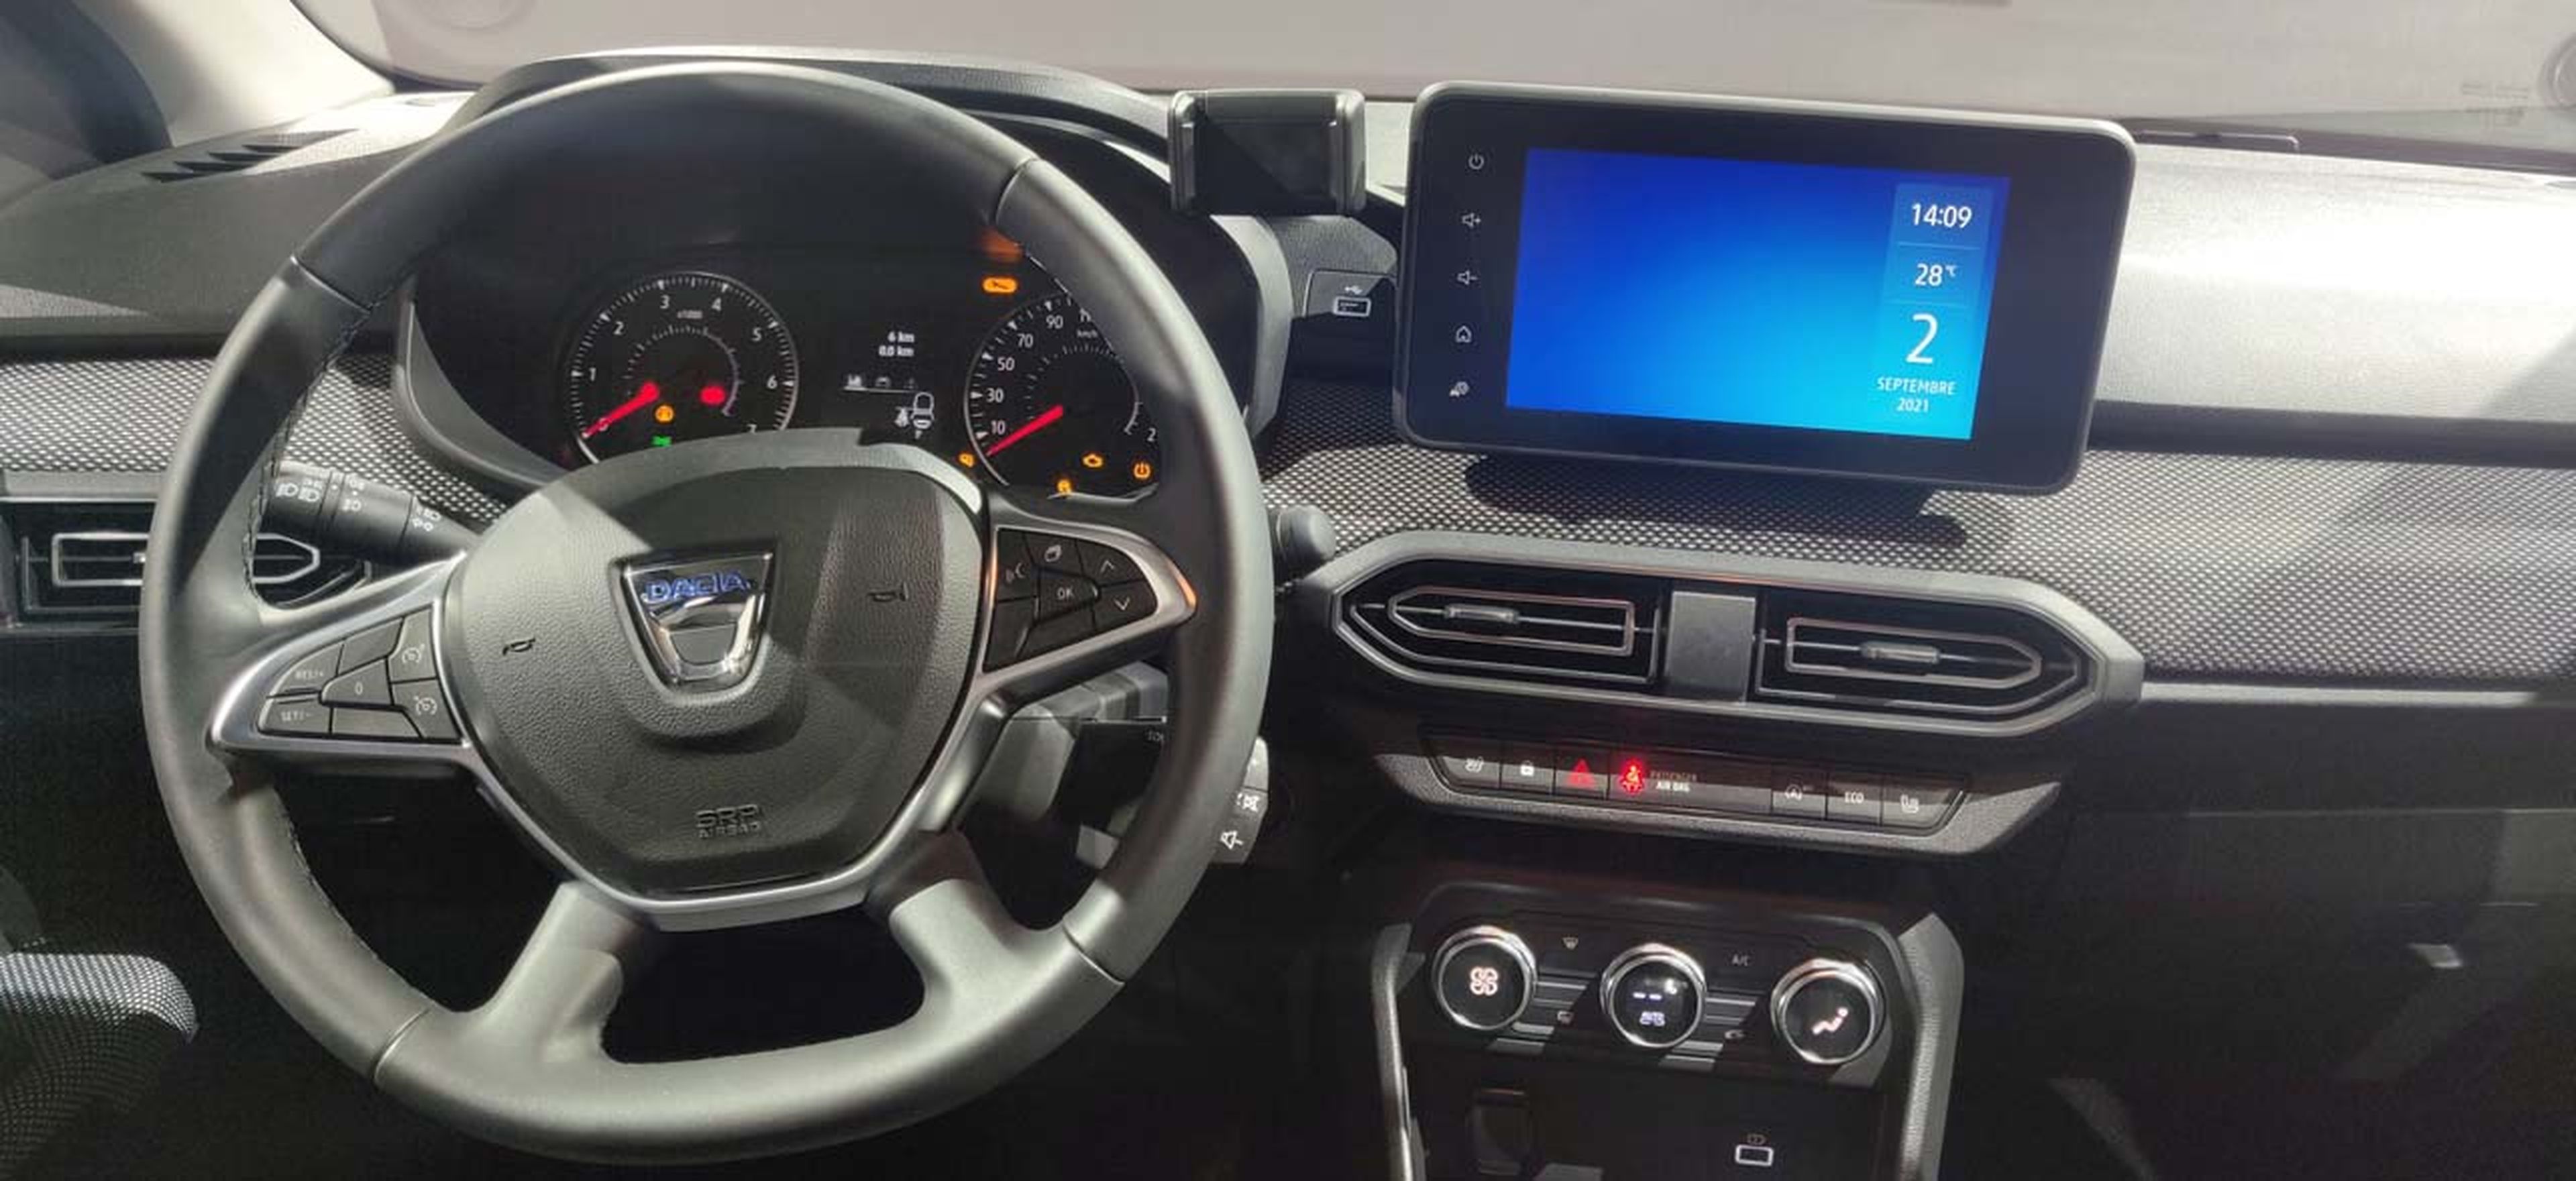 Dacia Jogger interior